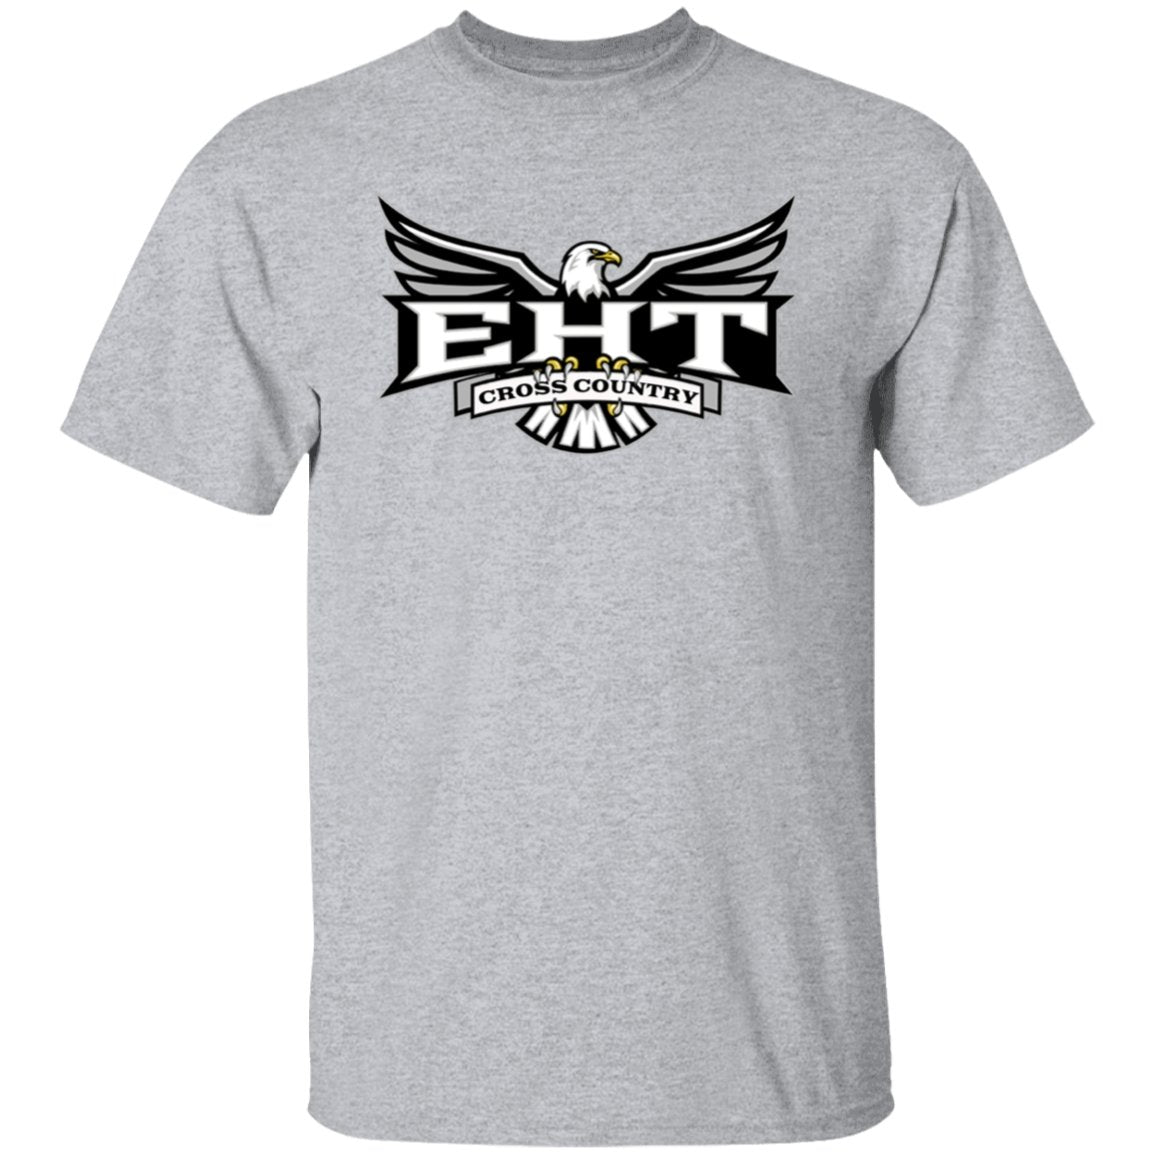 EHTXC 5.3 oz. T-Shirt